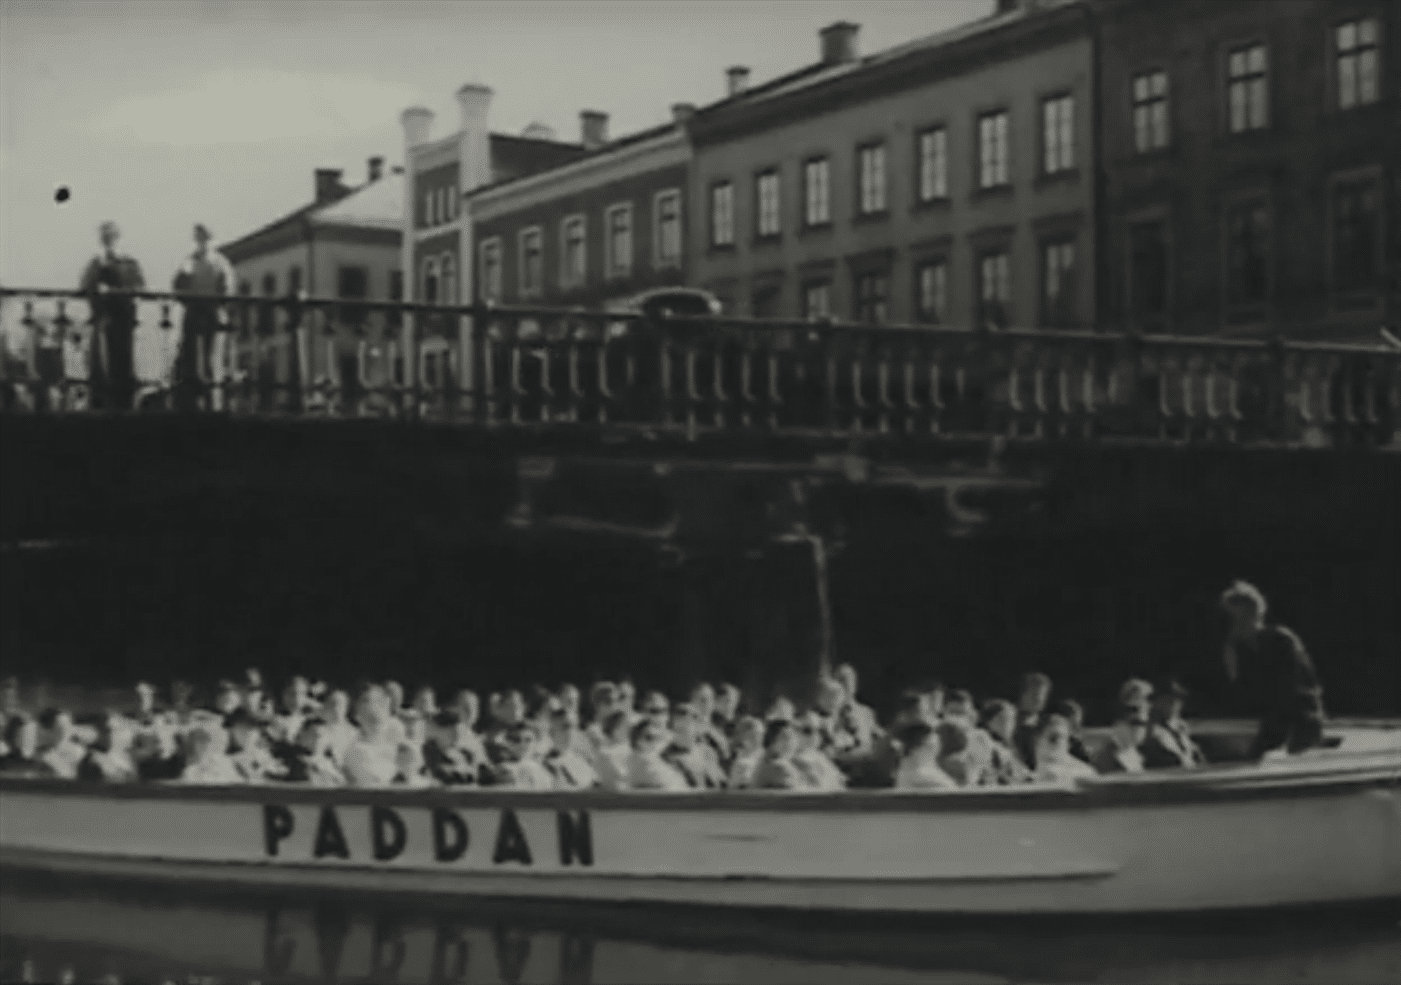 Rundtursbåten Paddan fylld med passagerare under en bro i Göteborg.